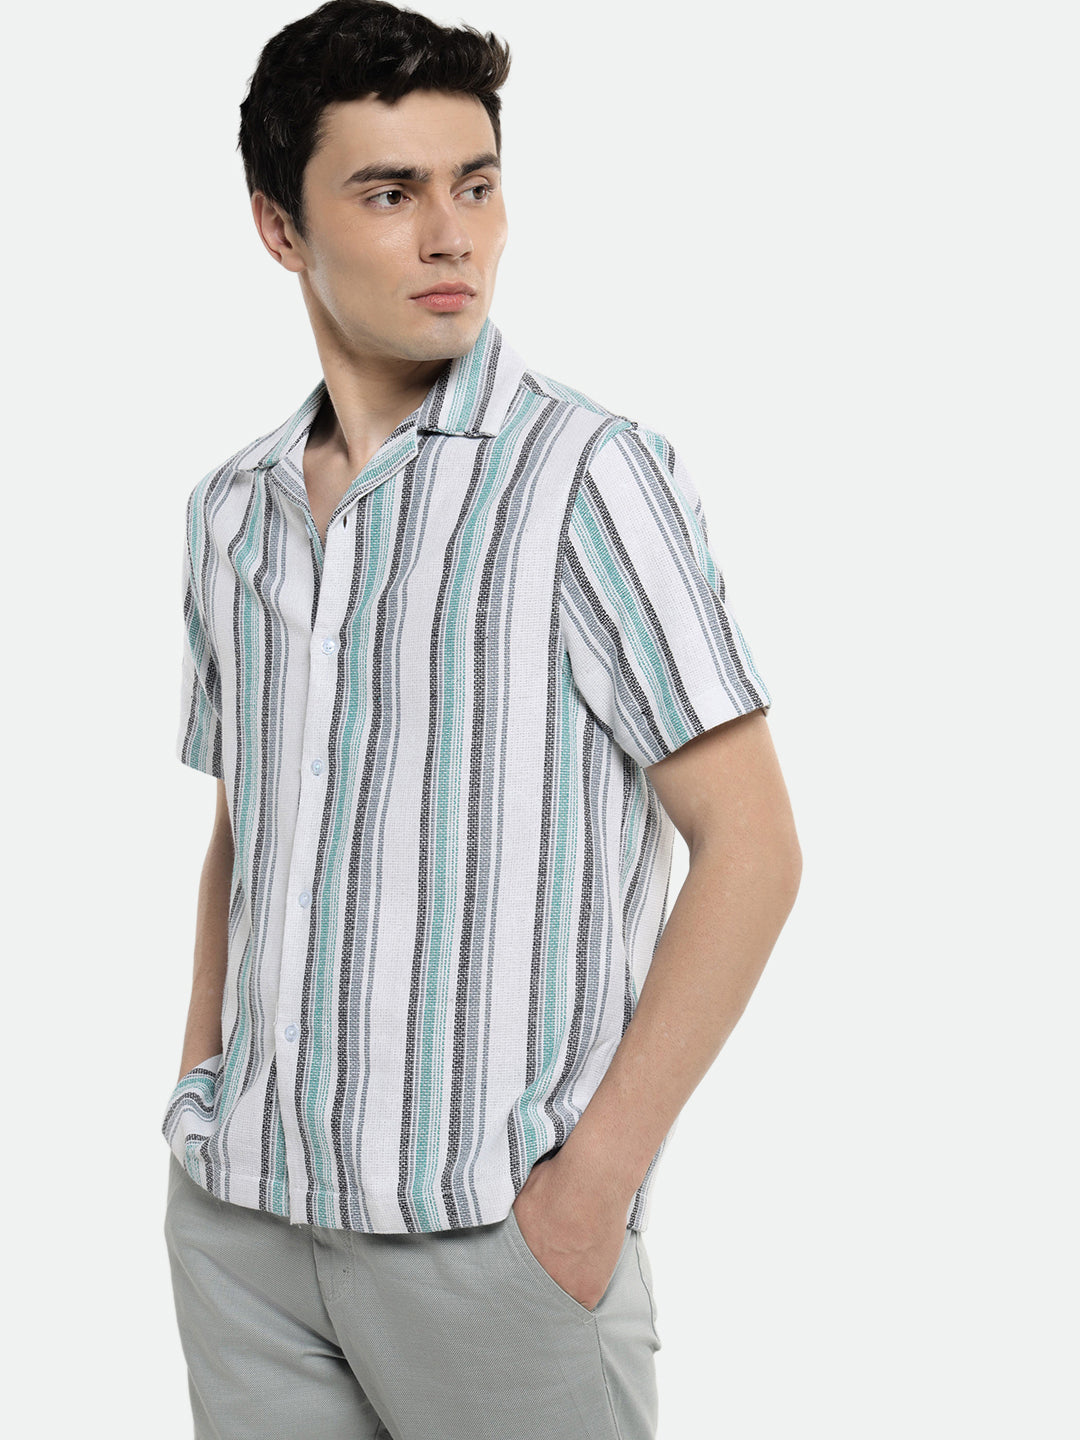 Dennis Lingo Mens's Blue Stripes Casual Shirt